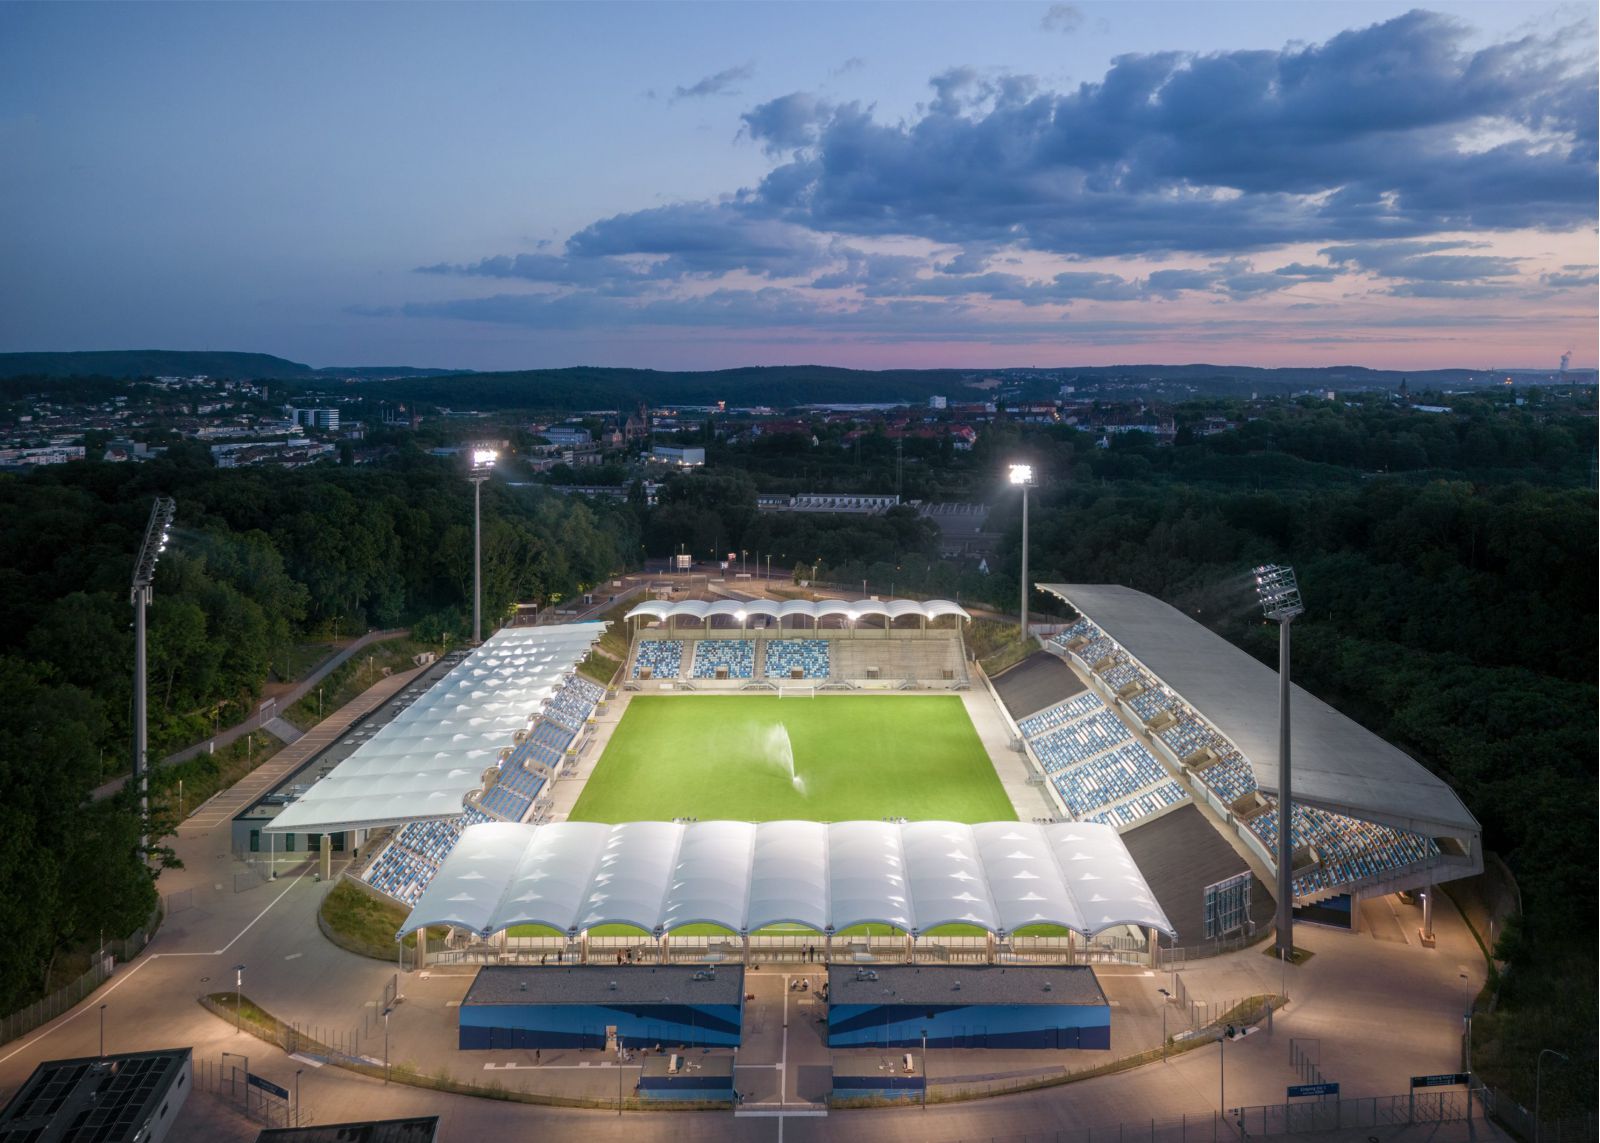 Ludwigspark Stadium